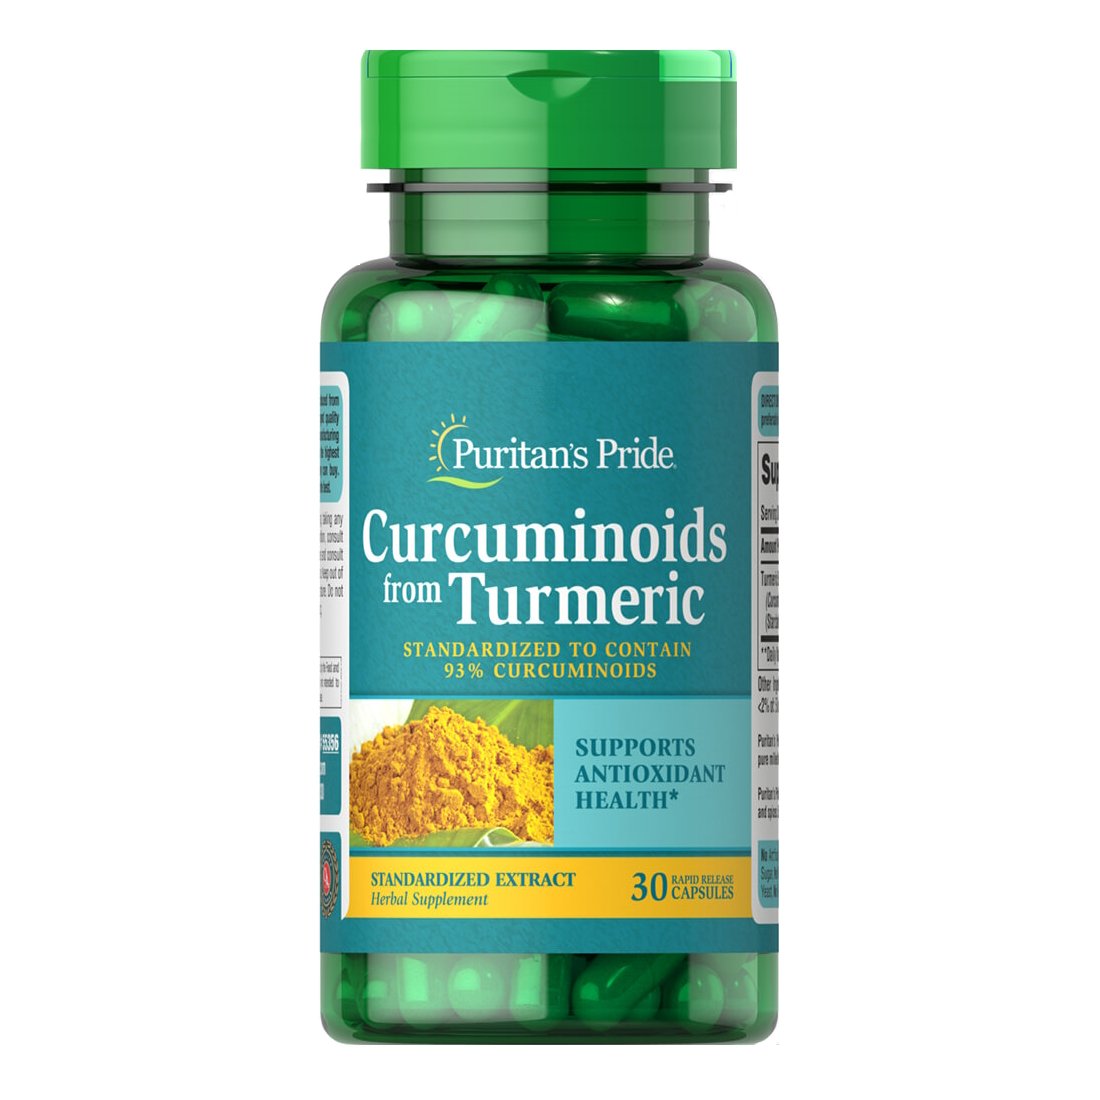 Натуральная добавка Puritan's Pride Curcuminoids from Turmeric, 30 капсул,  мл, Puritan's Pride. Hатуральные продукты. Поддержание здоровья 